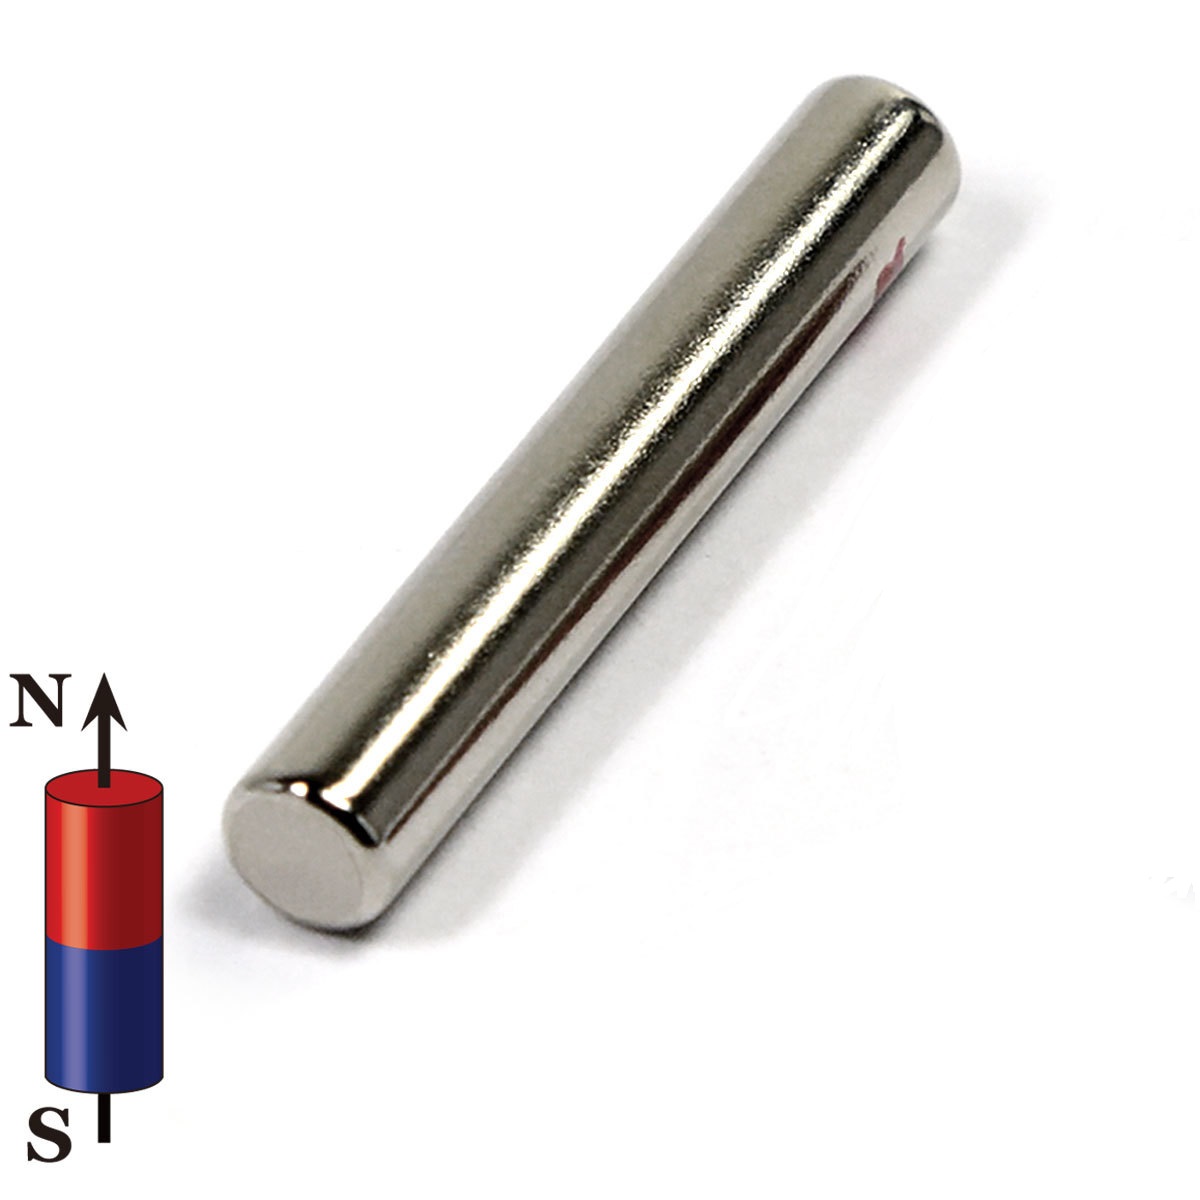 100x Neodym Magnet Zylinder D2,4x3,8mm magnetisch Geocaching starke Minimagnete 